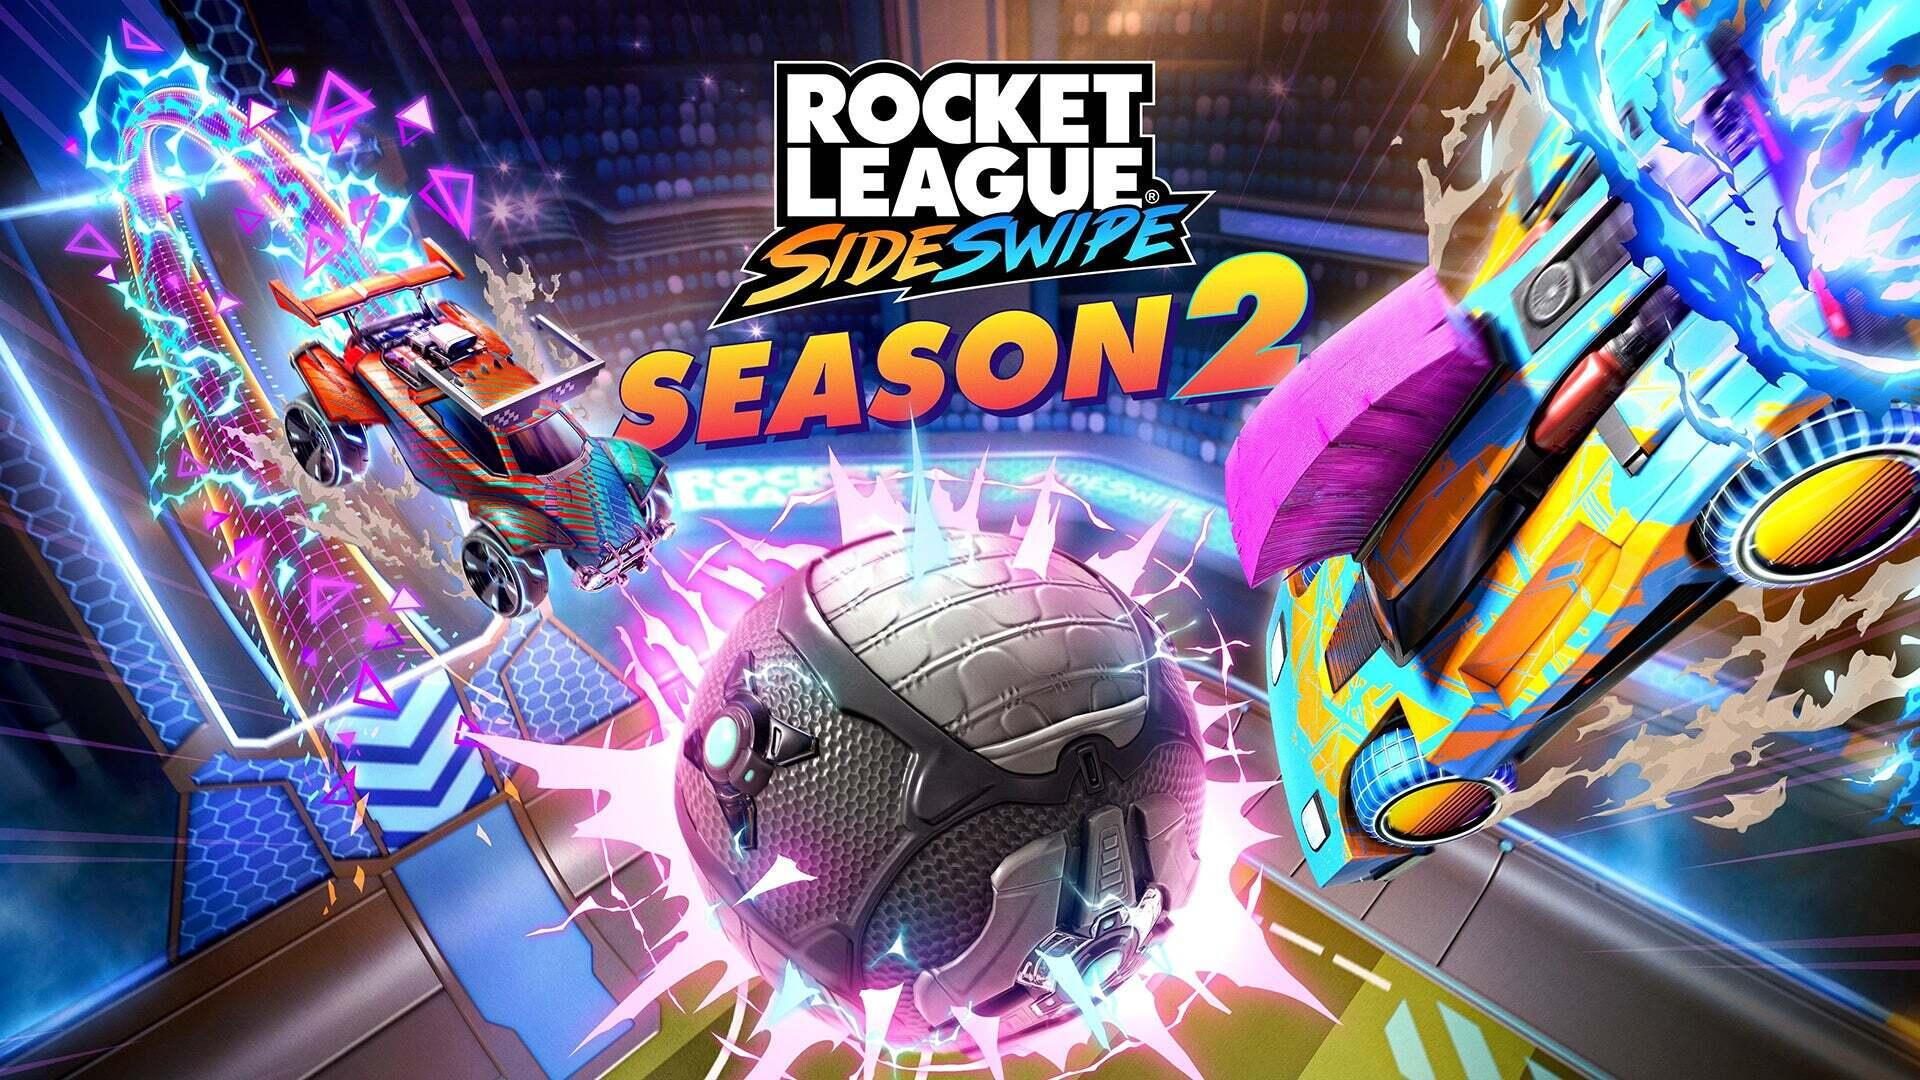 Rocket League Sideswipe season 2 hero